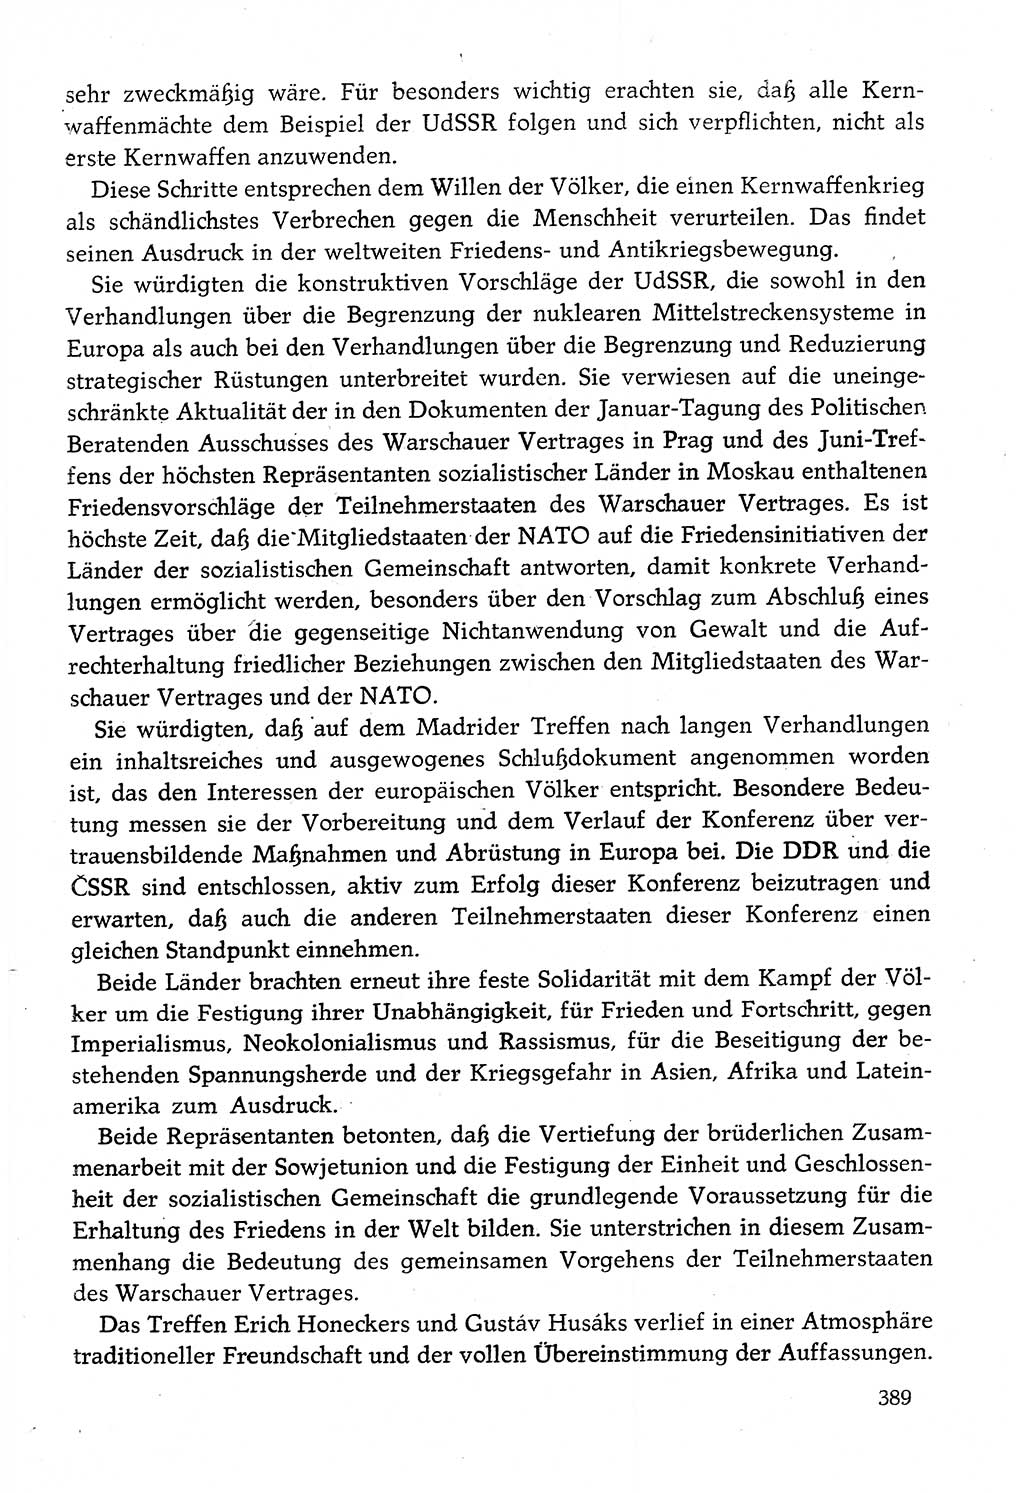 Dokumente der Sozialistischen Einheitspartei Deutschlands (SED) [Deutsche Demokratische Republik (DDR)] 1982-1983, Seite 389 (Dok. SED DDR 1982-1983, S. 389)